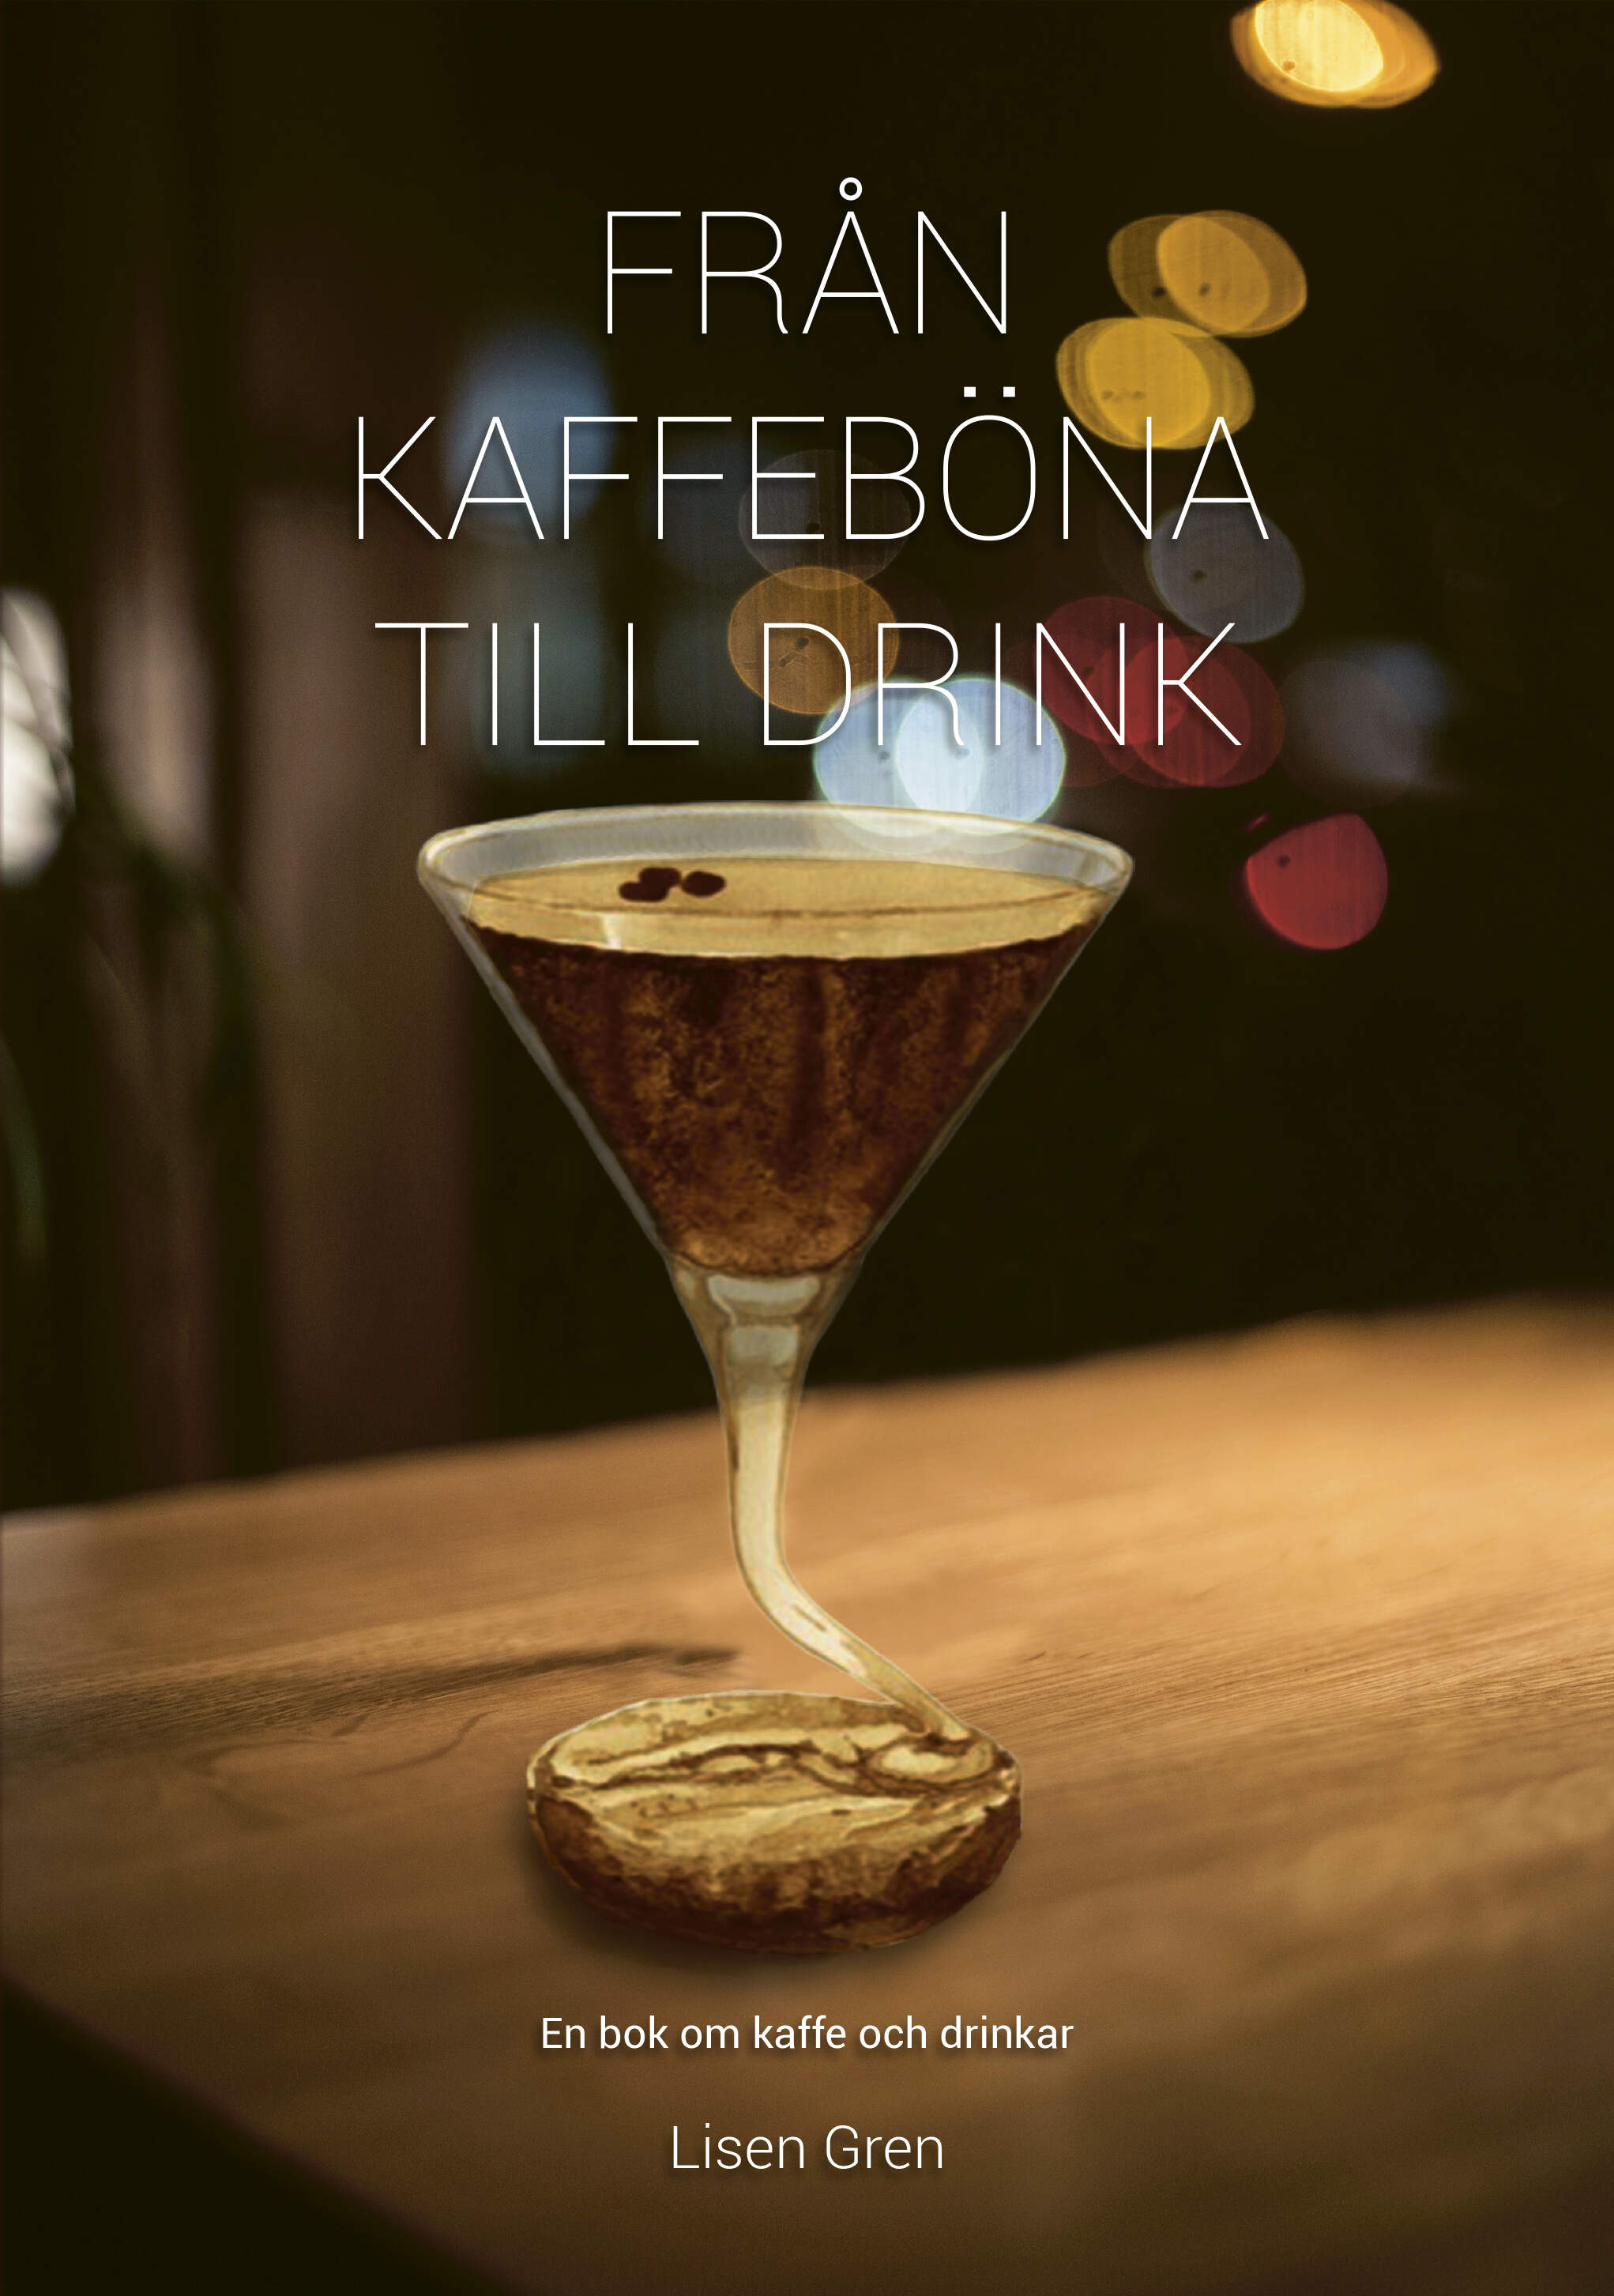 Från kaffeböna till drink är skriven av författaren Lisen Gren, Grenadine Bokförlag.